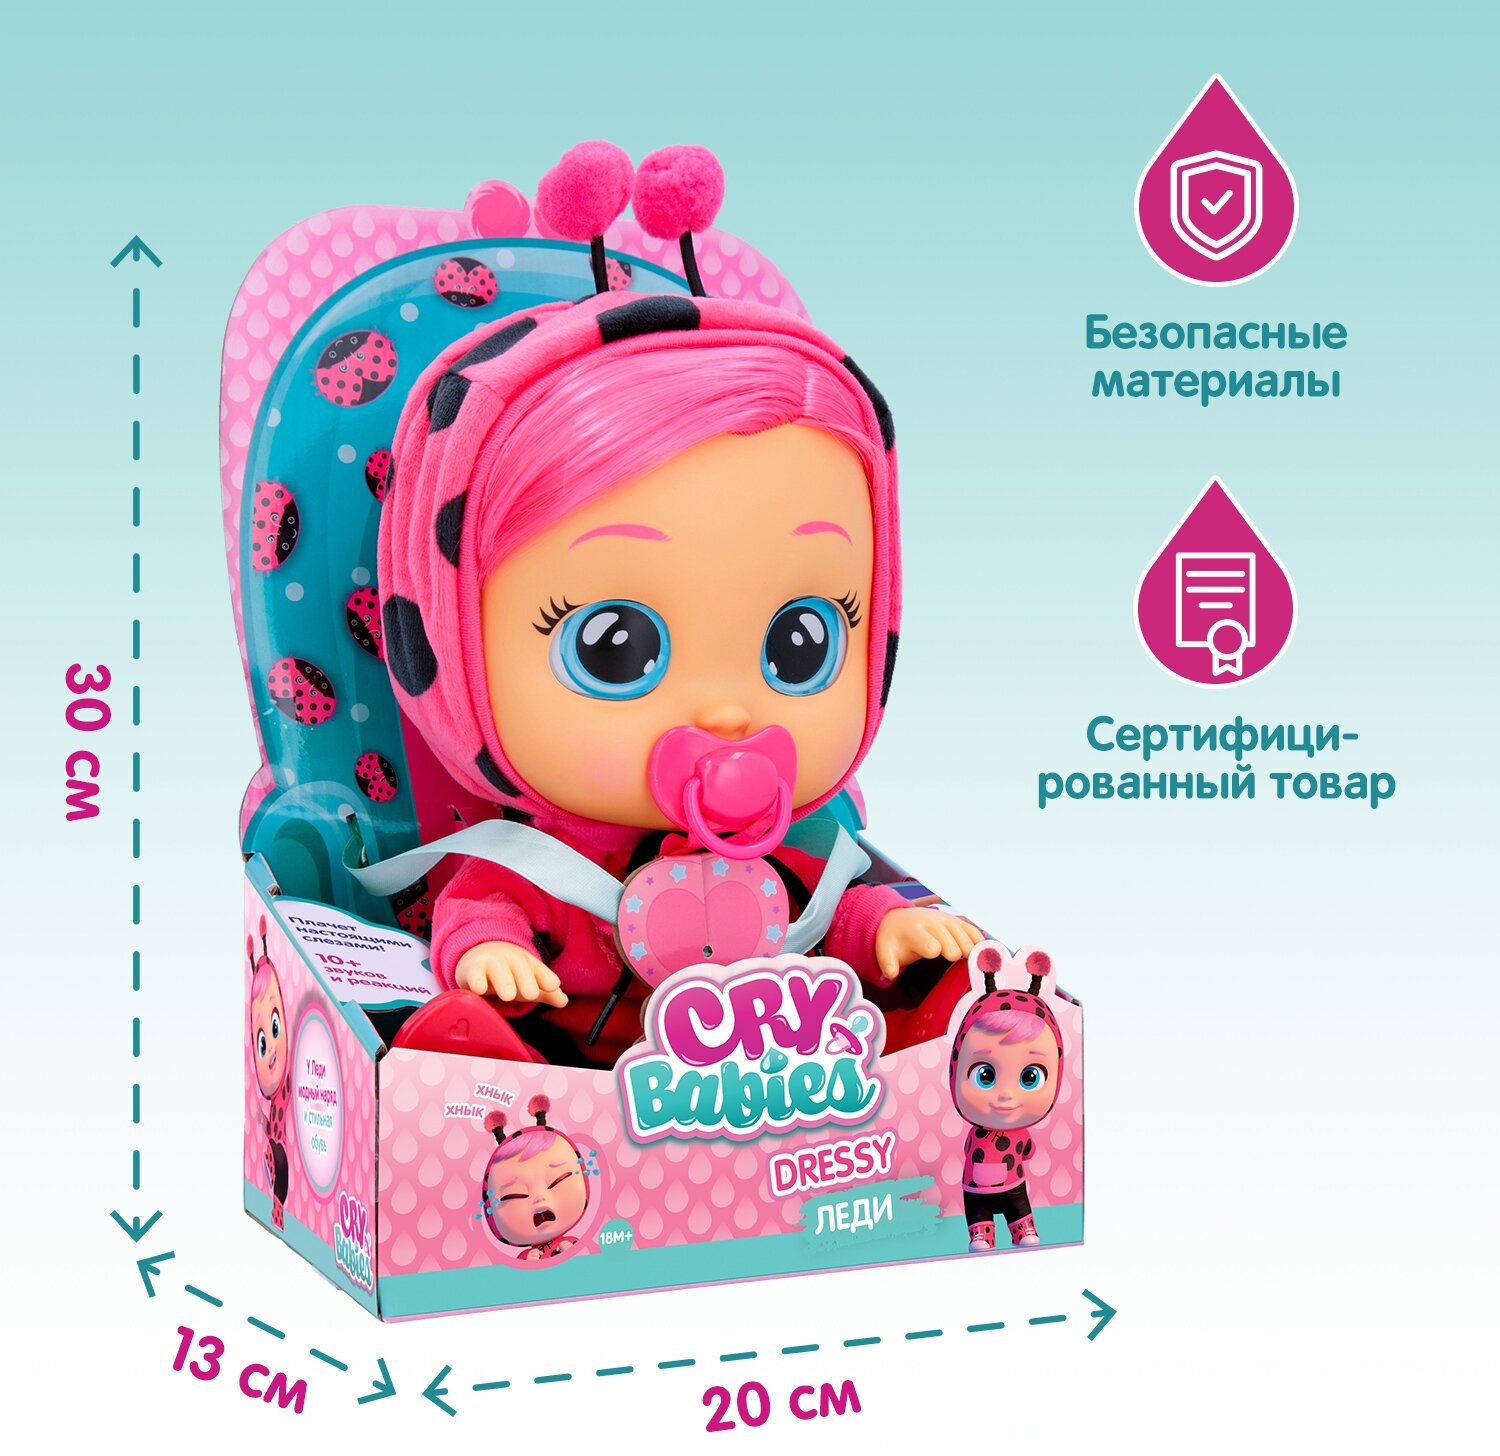 Кукла интерактивная Cry Babies Dressy Леди Край Бебис - фото №3